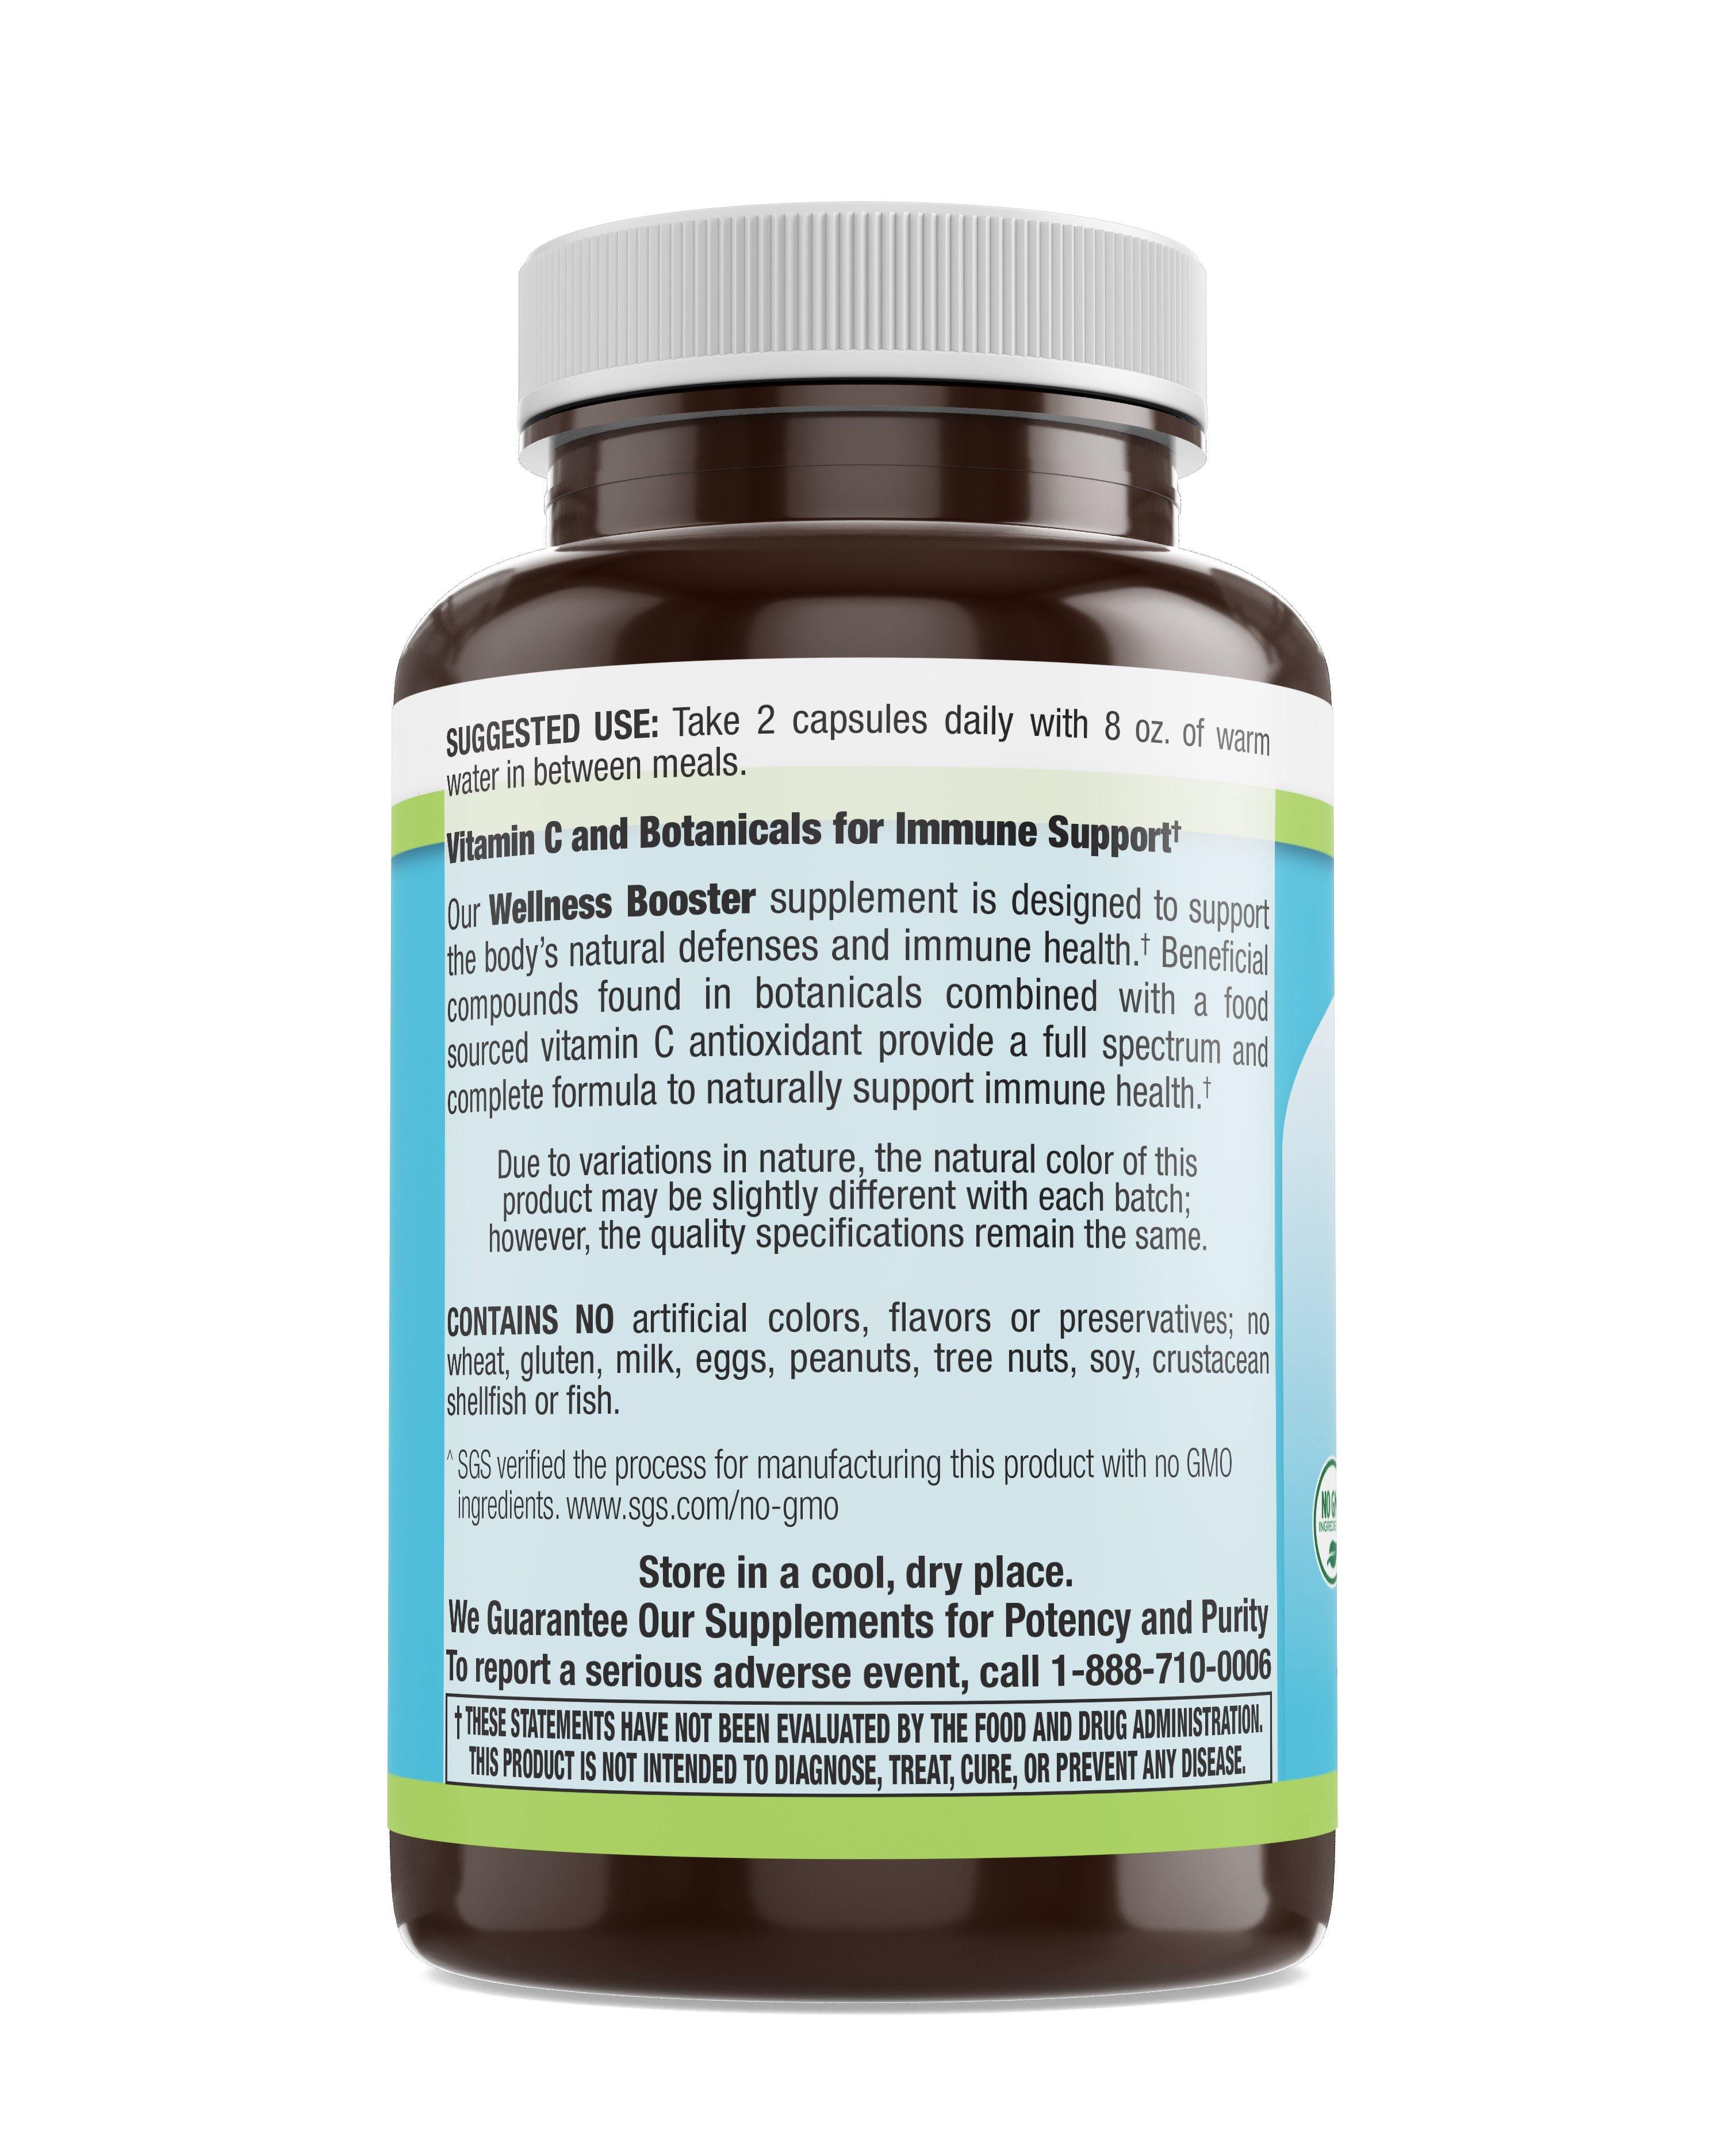 Livamed - Wellness Booster - Herbal Immune Veg Caps 100 Count - Livamed Vitamins